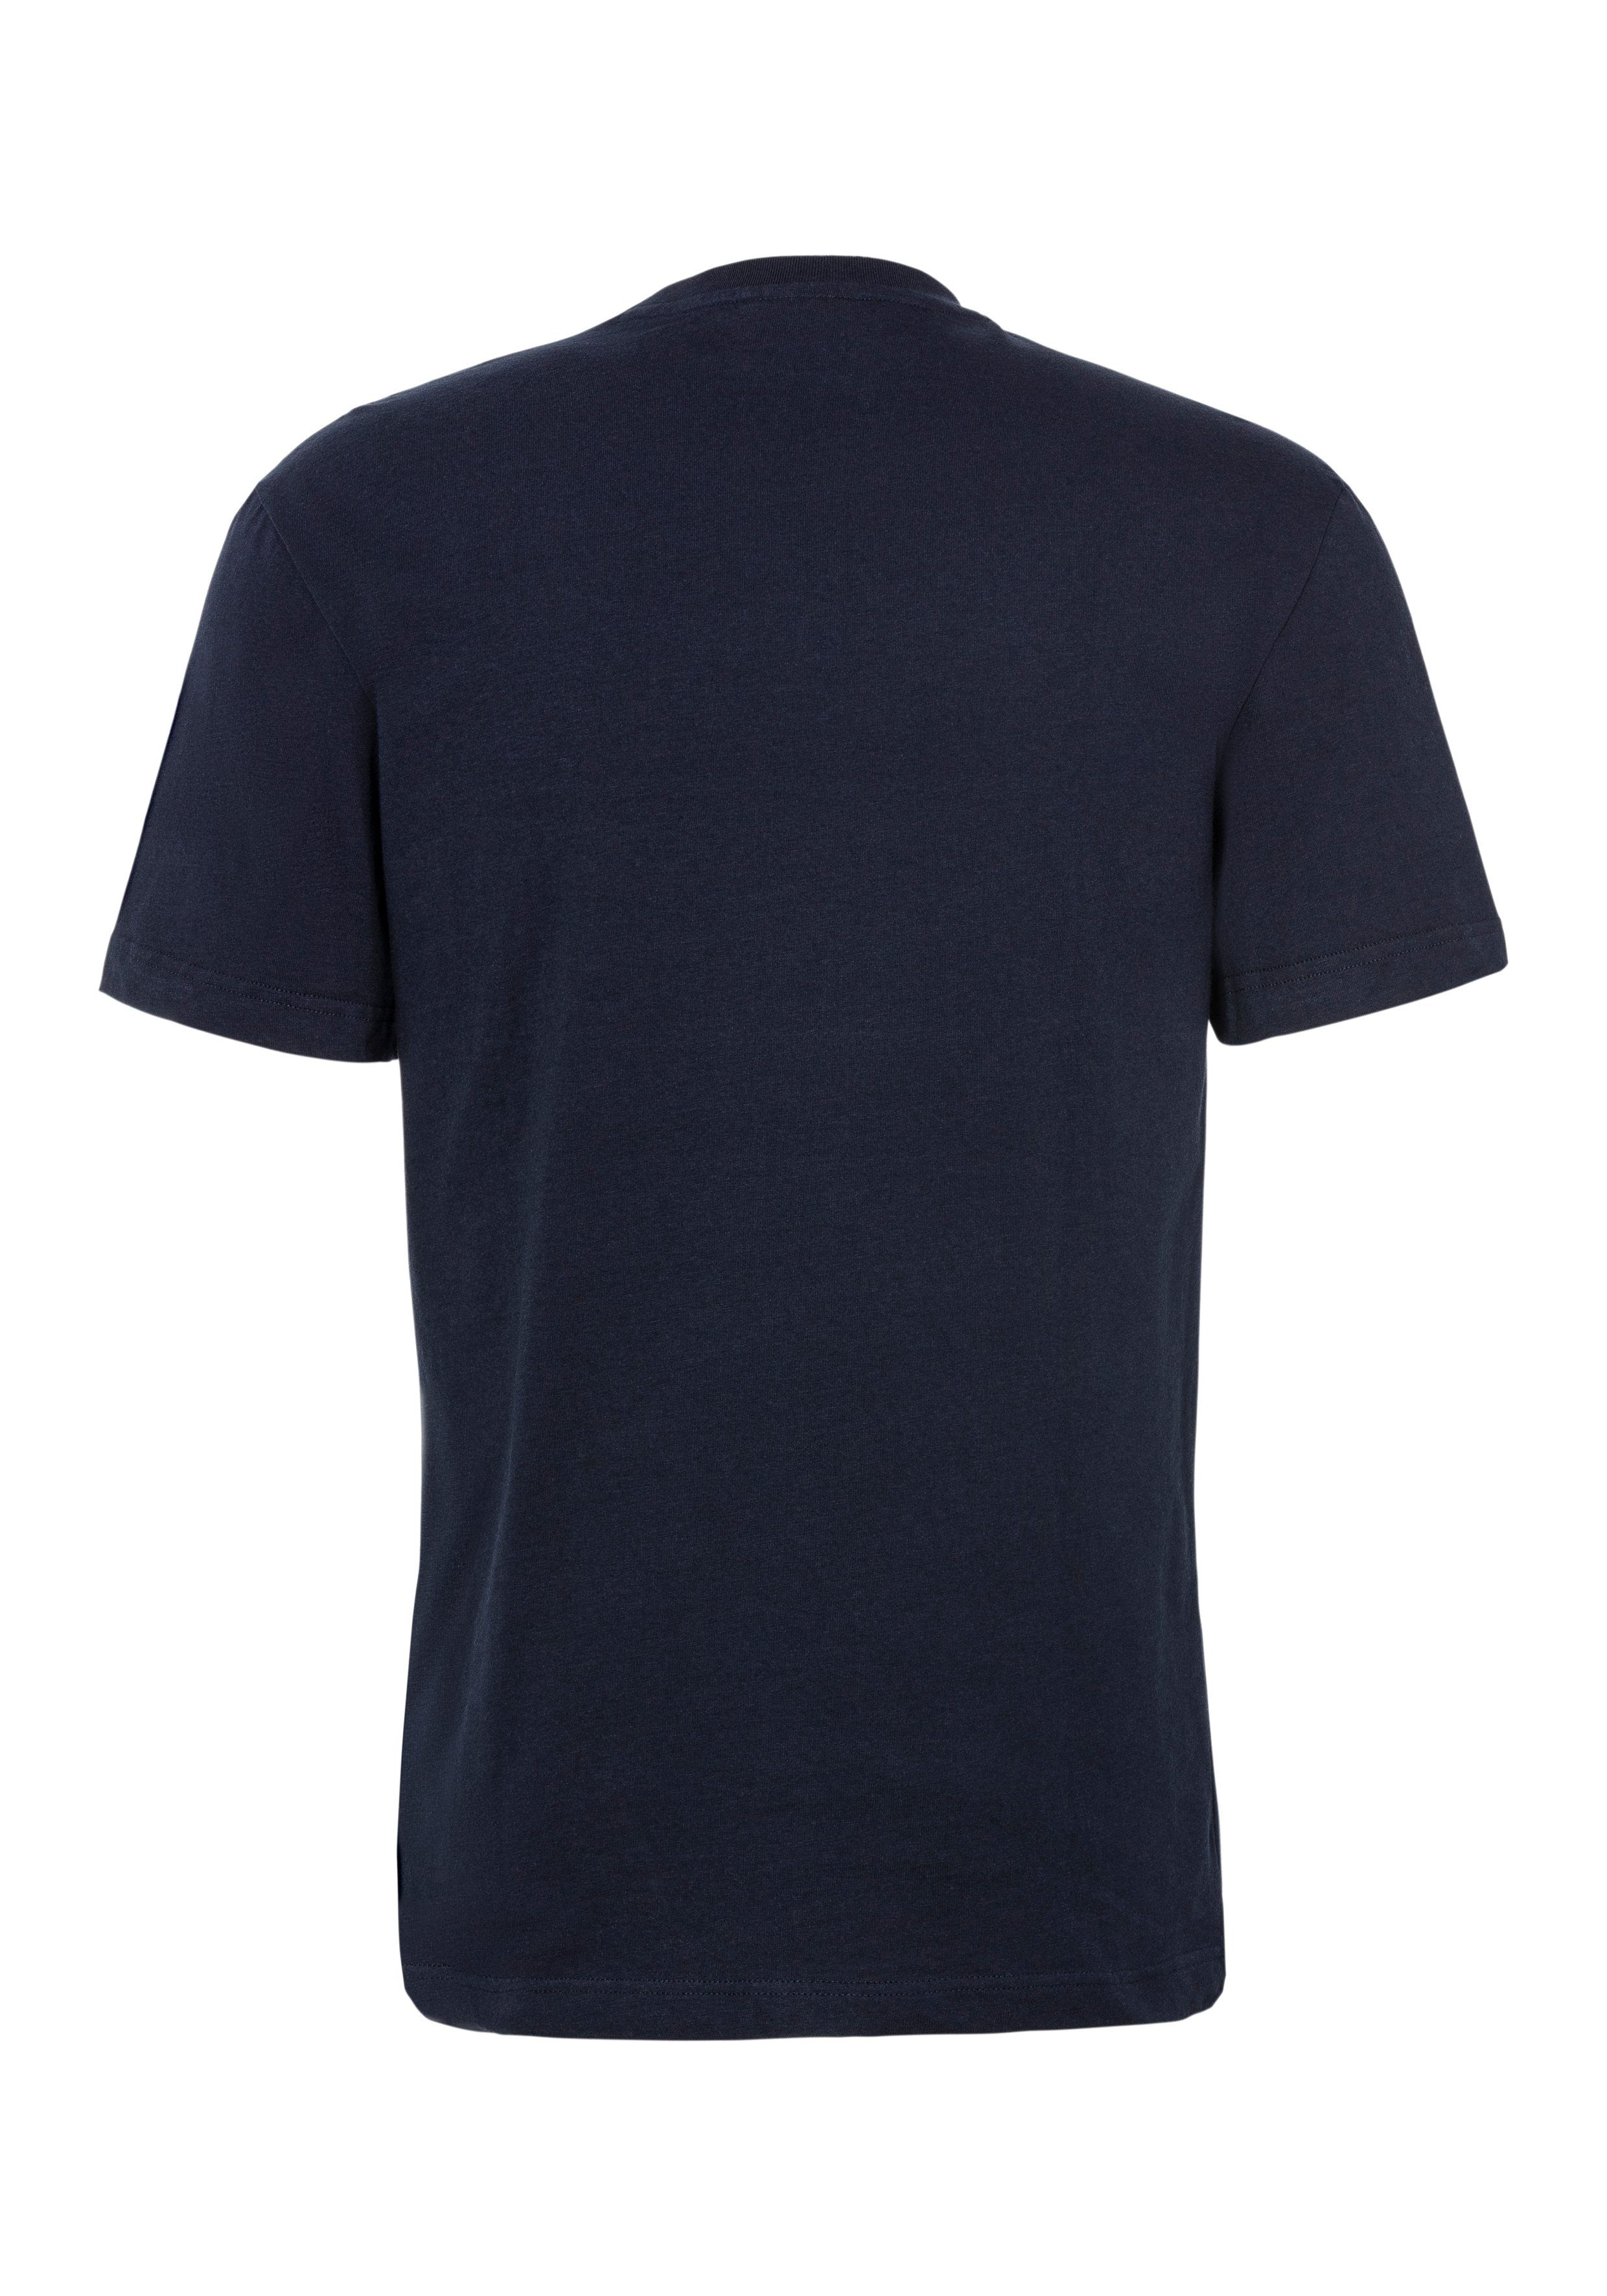 mit Lacoste großem T-SHIRT der Brust Print auf SEQUOIA/ABYSM T-Shirt